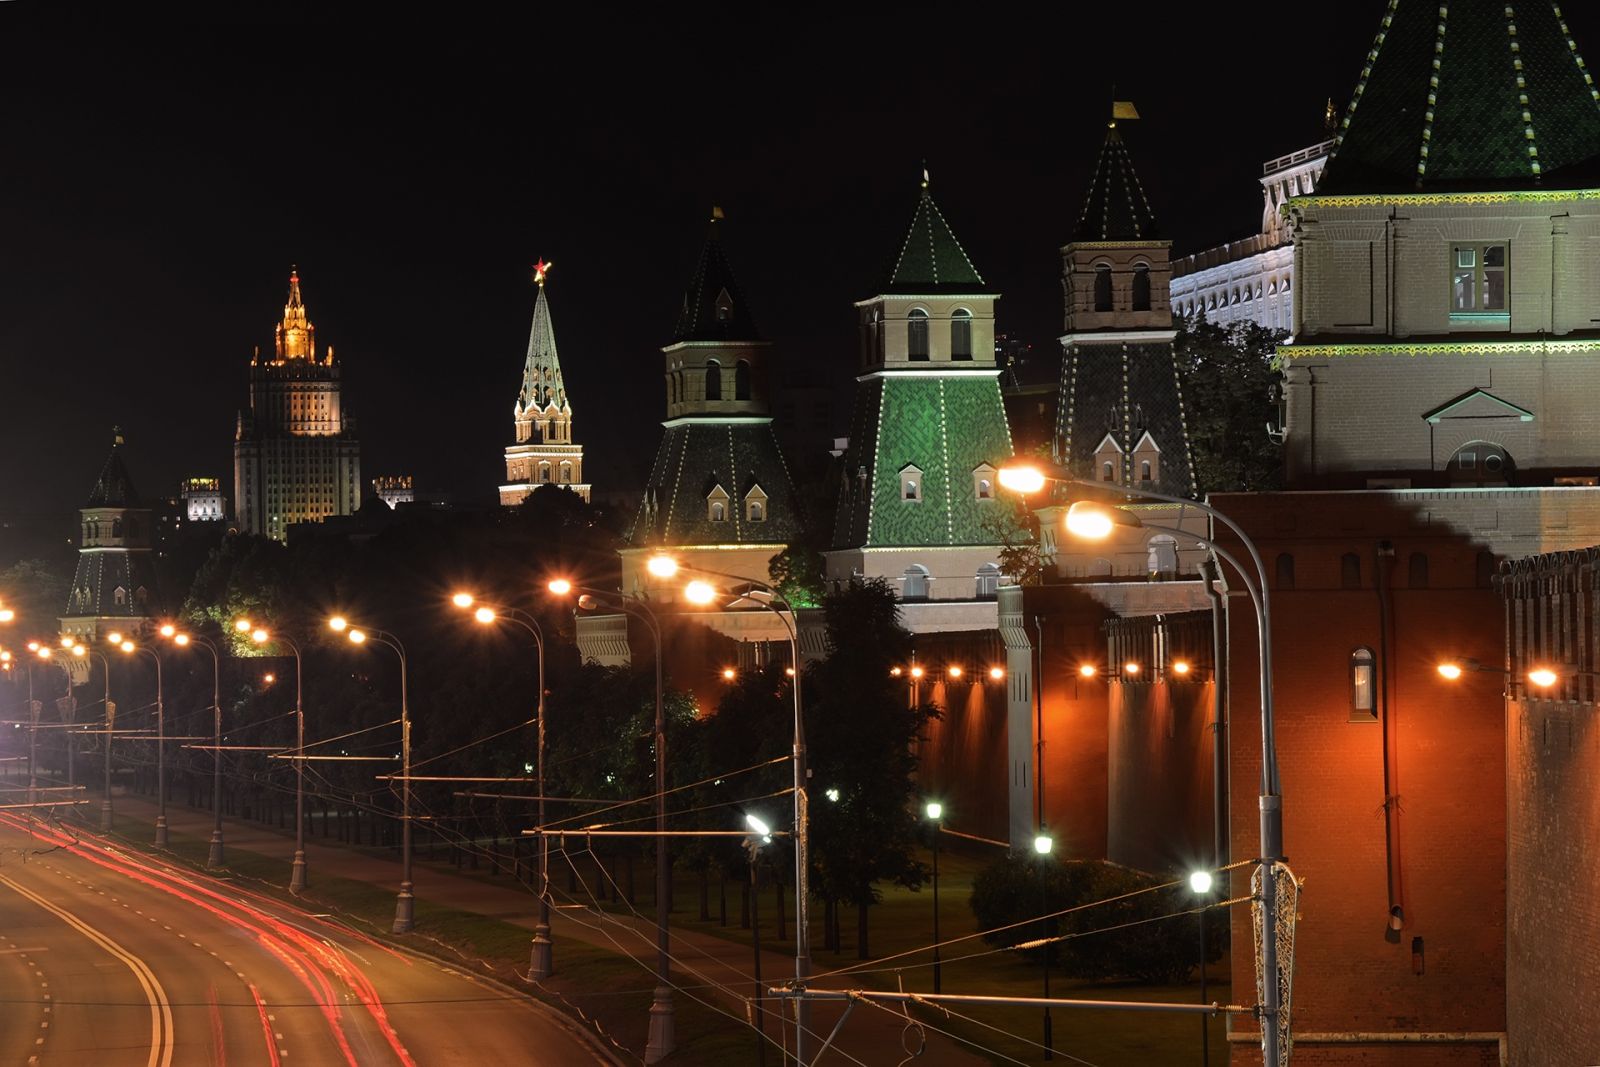 Реферат: Башни Московского Кремля